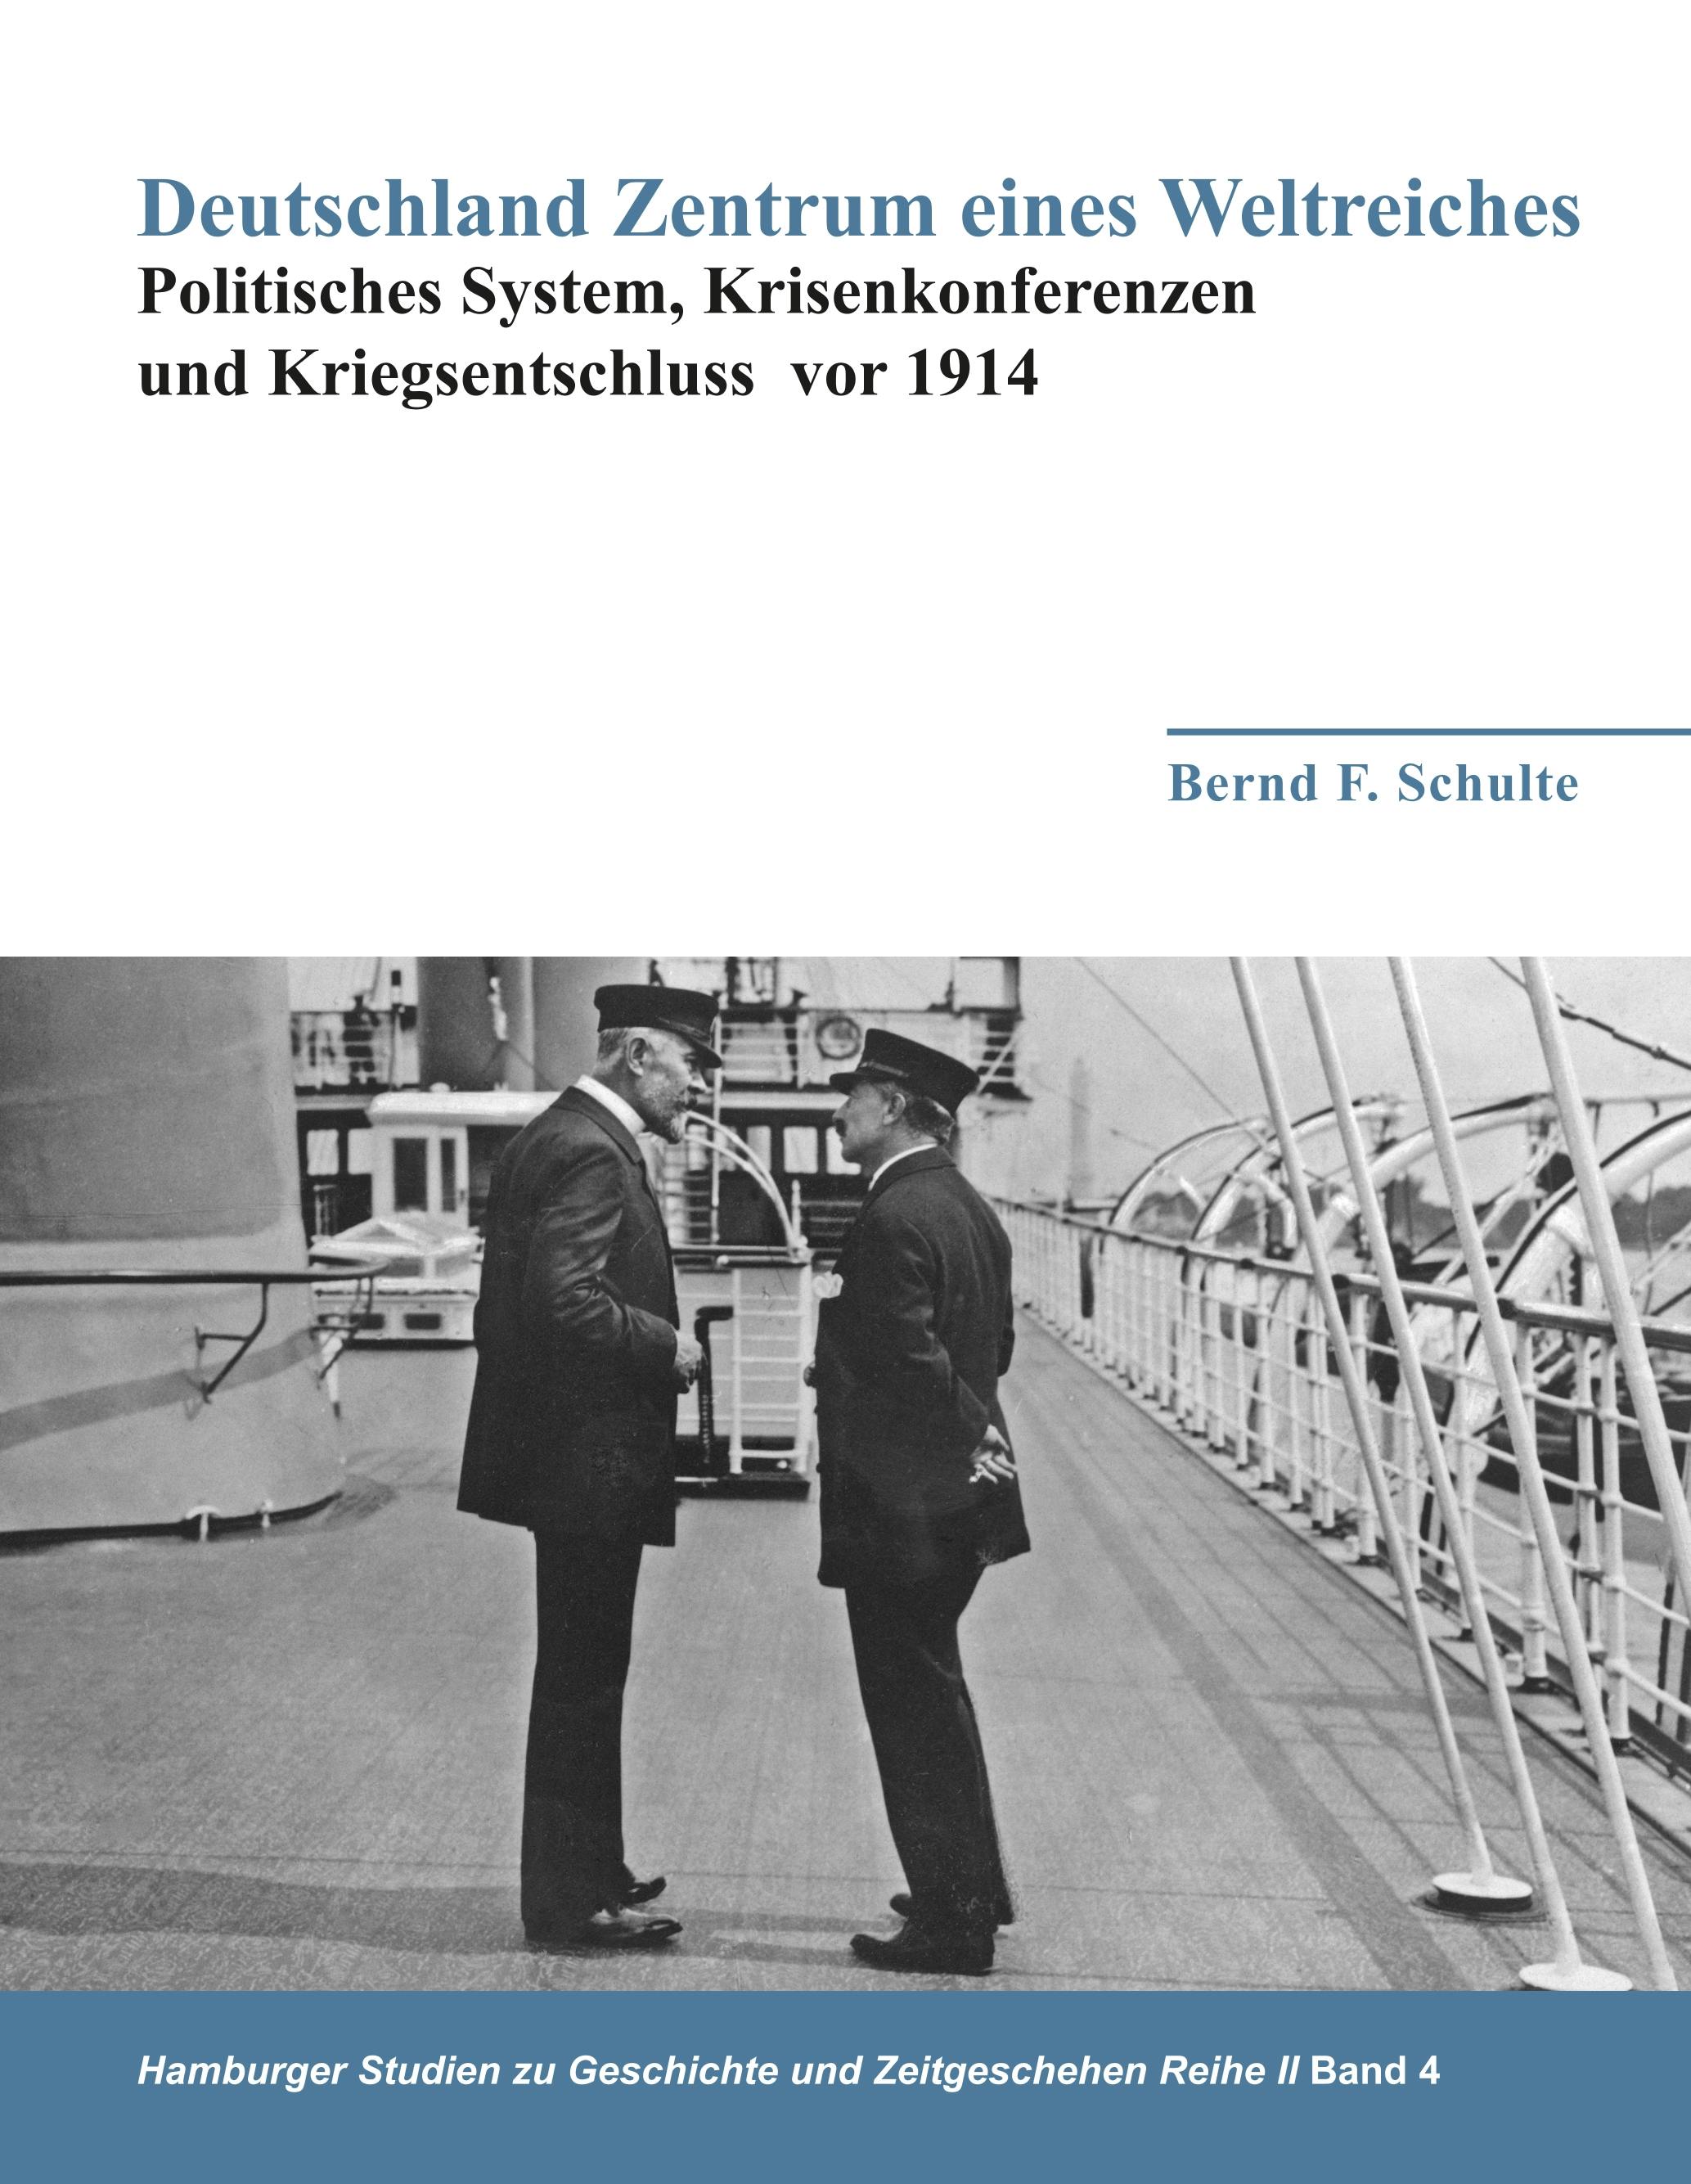 Deutschland Zentrum eines Weltreiches - Politisches System, Krisenkonferenzen und Kriegsentschluss vor 1914 - Bernd F. Schulte